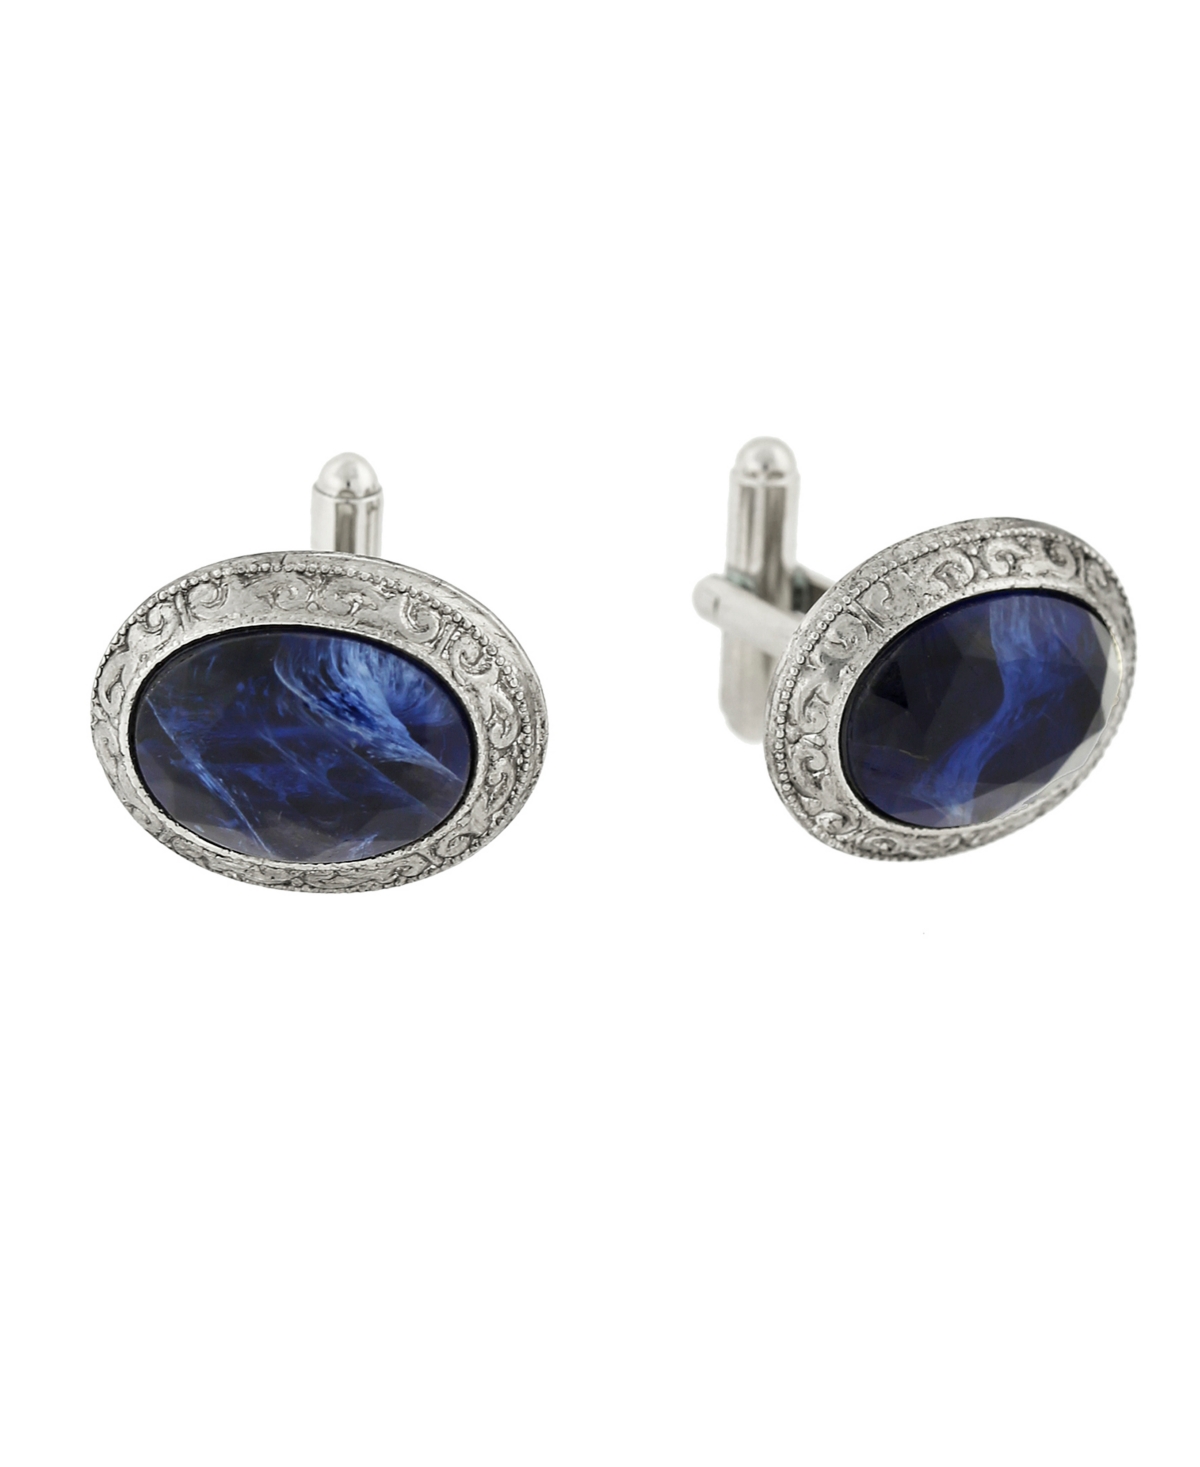 1928 Jewelry Silver-tone Oval Cufflinks In Blue